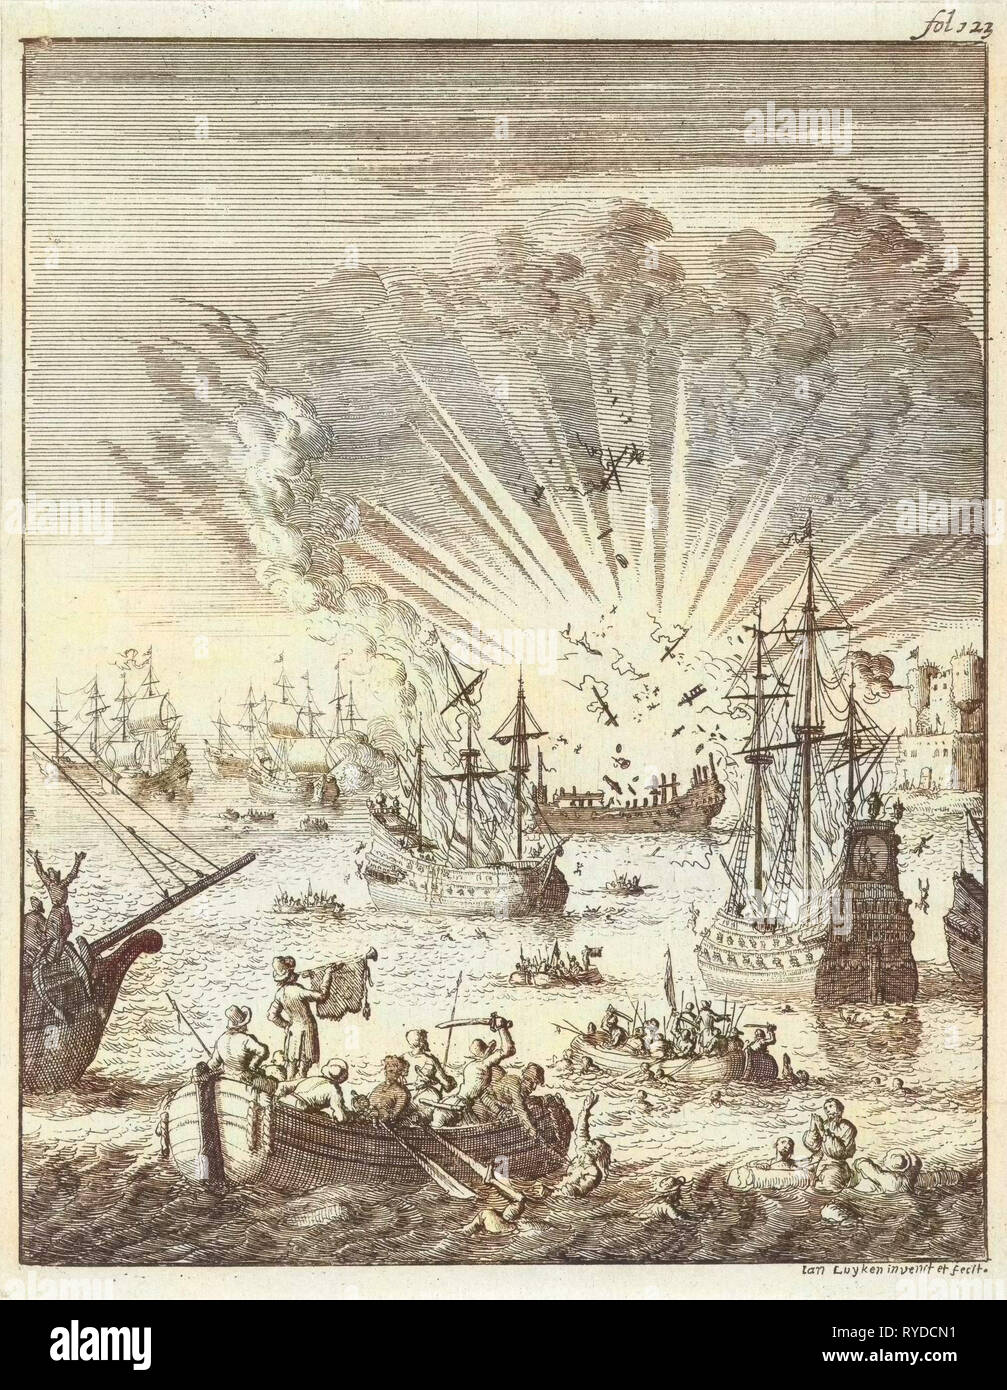 Seeschlacht zwischen niederländischen und spanischen Schiffe vor der Küste von Goa Indien, 1638, Jan Luyken, 1683 Stockfoto